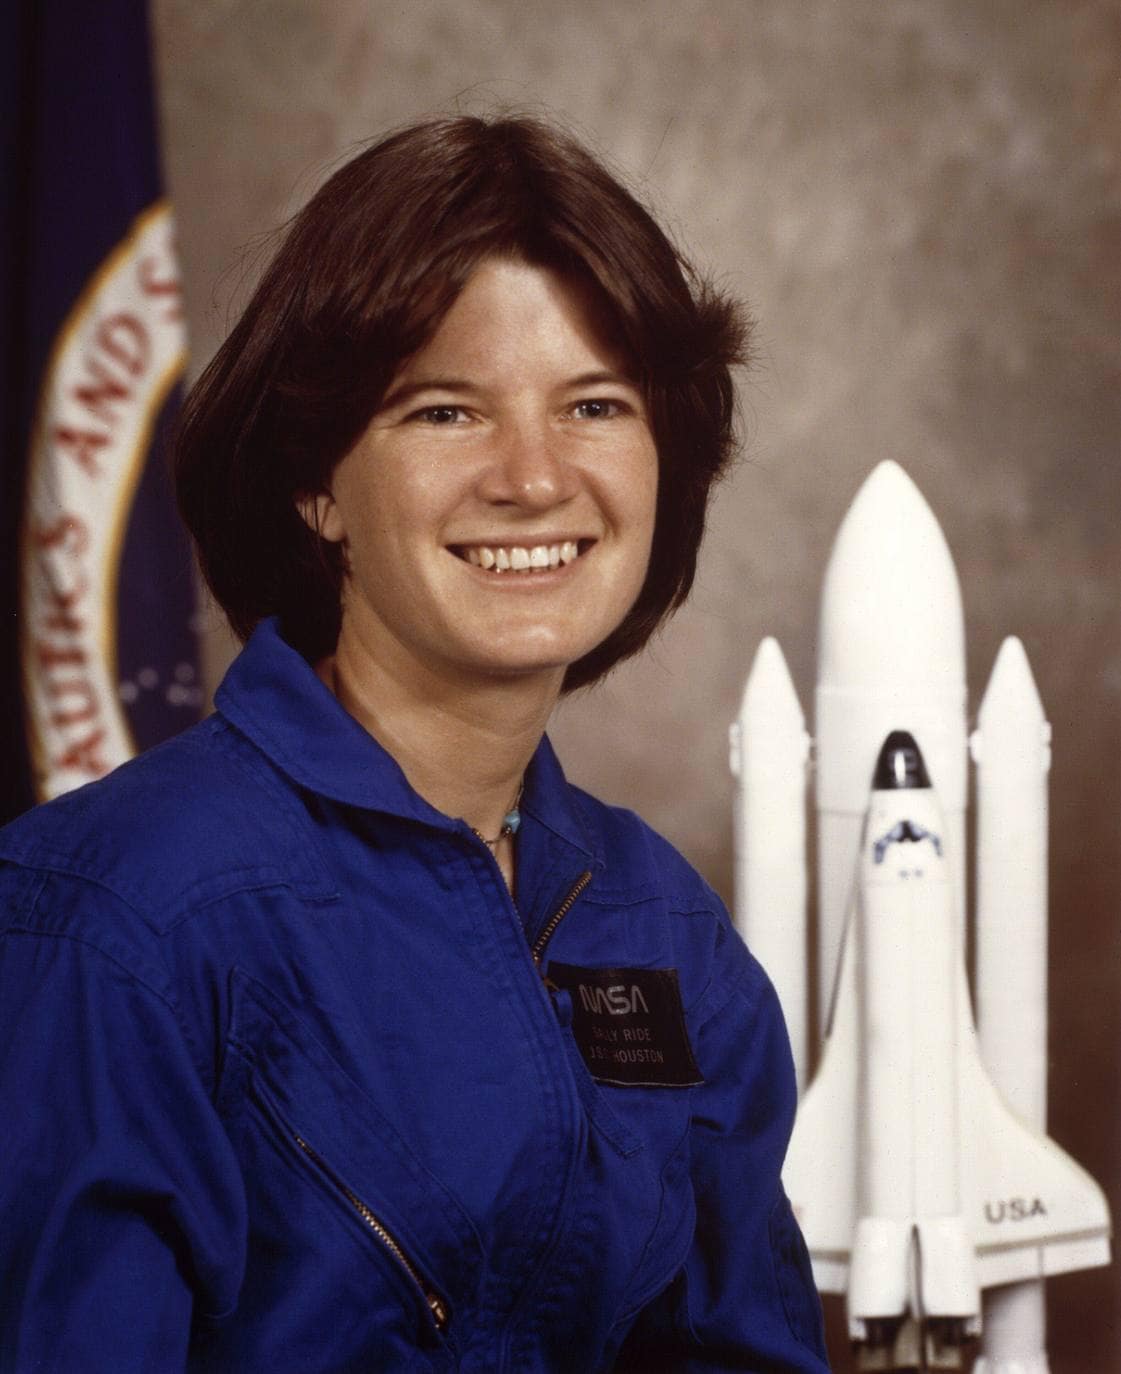 La foto fechada en enero de 1983 muestra a la astronauta de la NASA Sally Ride en el Centro Espacial Johnson en Houston. Ride fue la primera mujer estadounidense en volar al espacio,